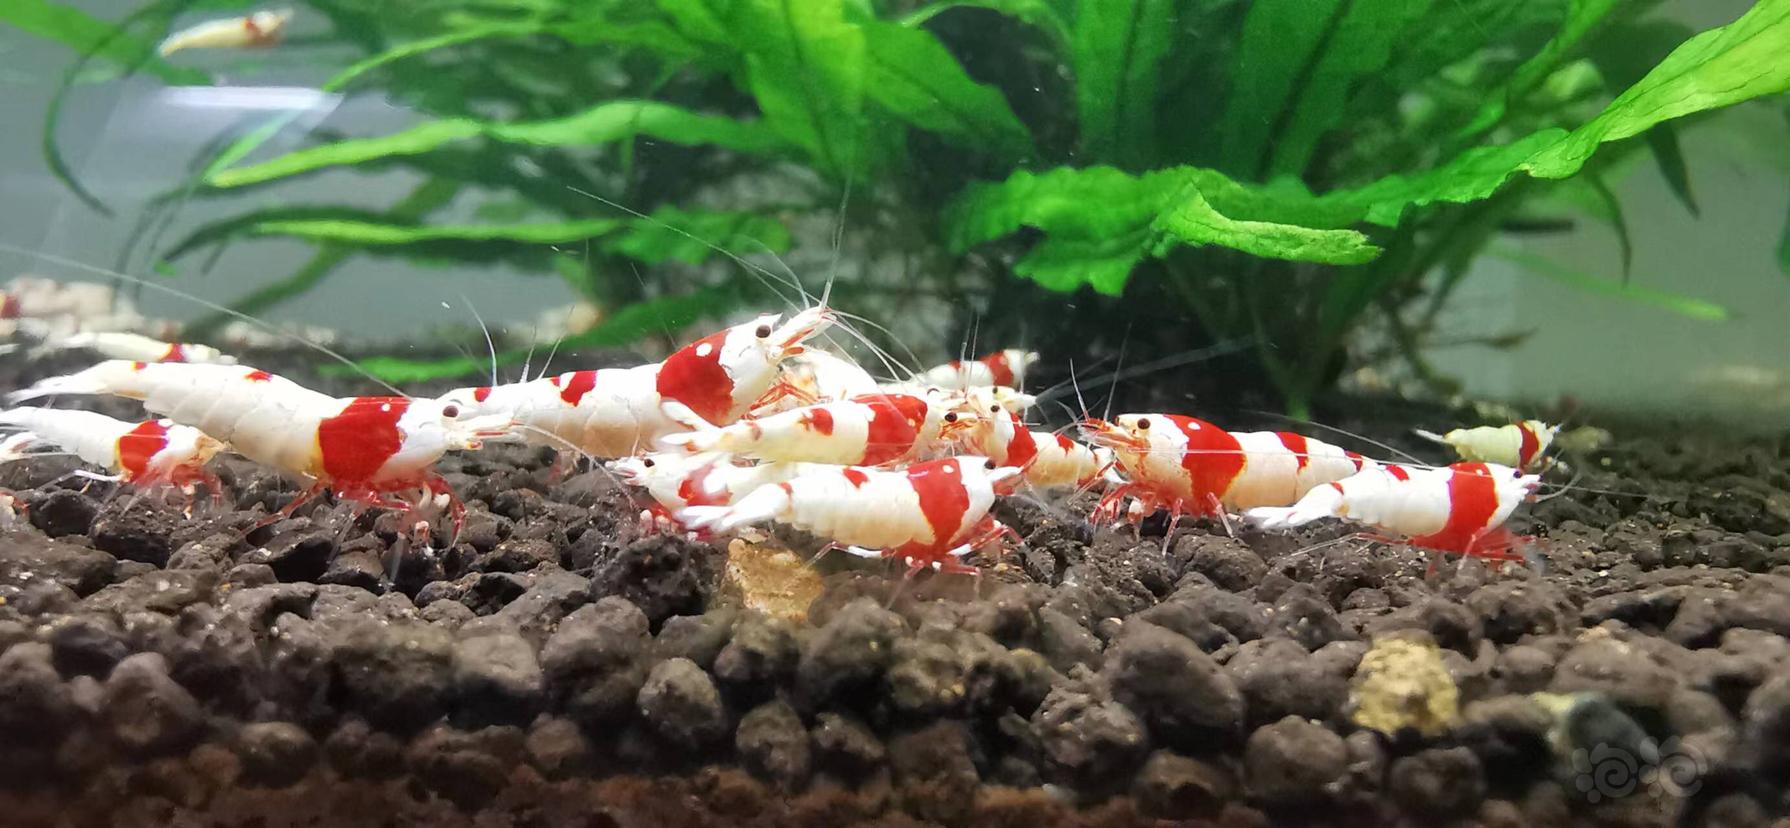 【水晶虾】翻缸出红白水晶虾-图2